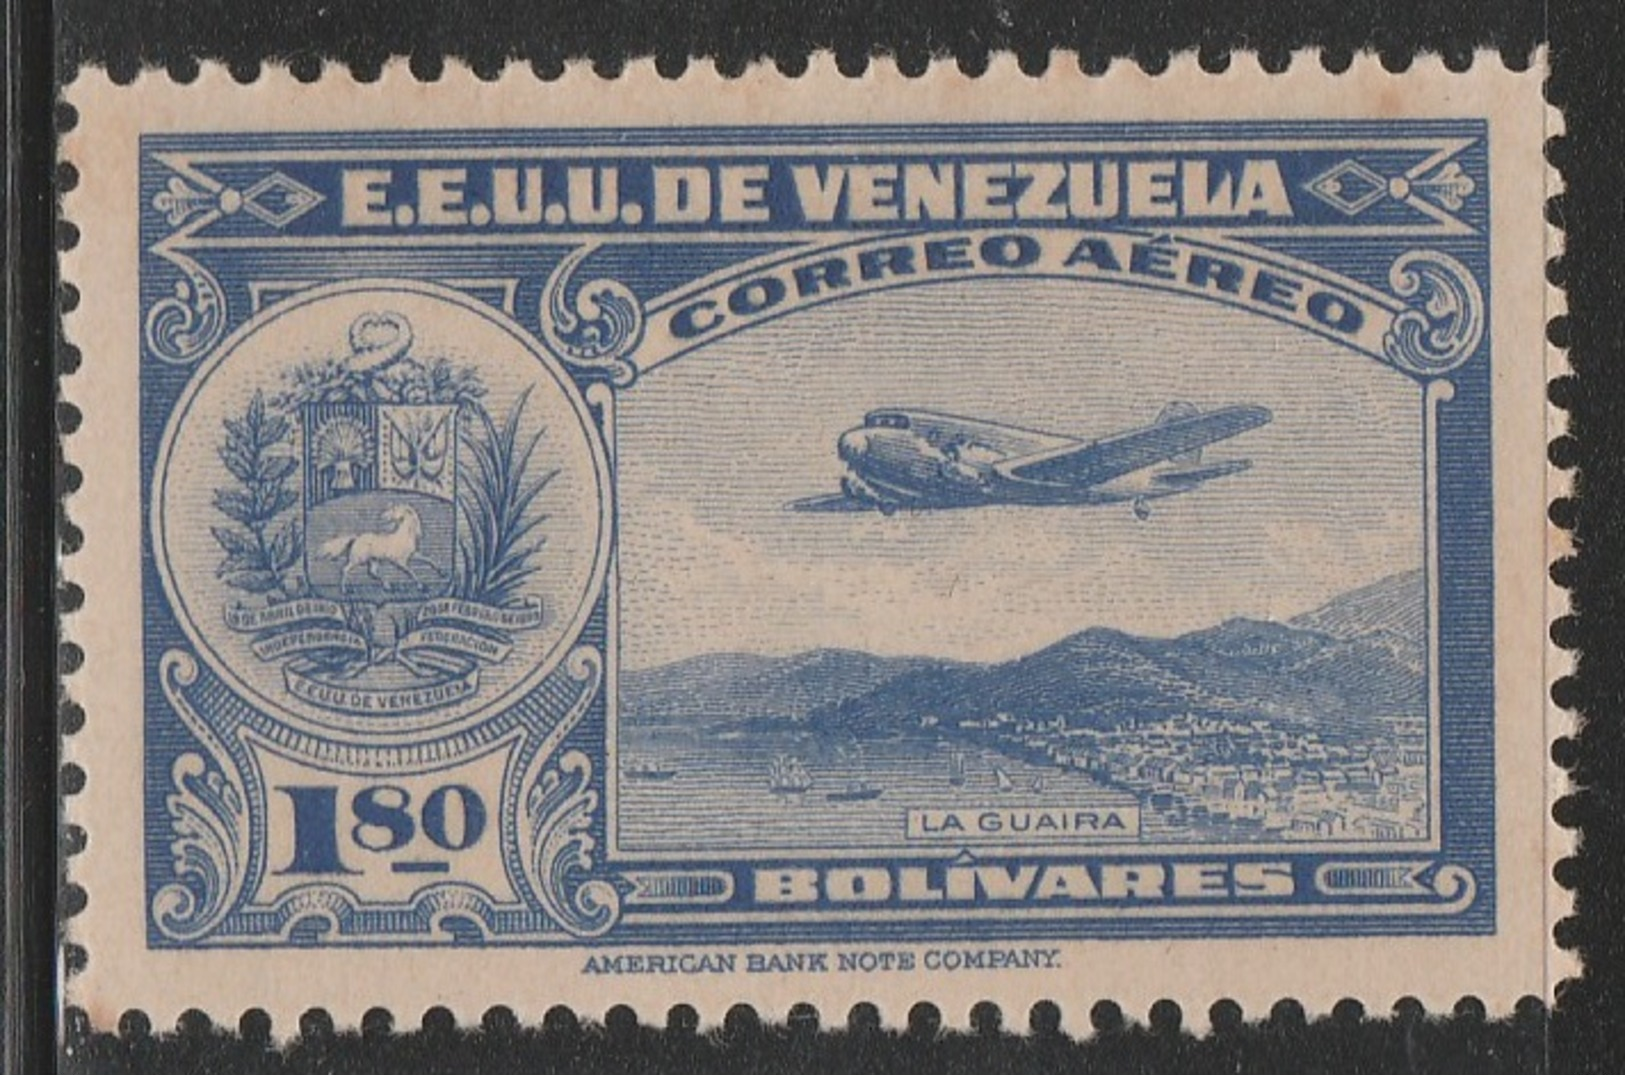 Venezuela 1938 - C101, 1.80bs - AIR MAIL - La Guaira - MNH - Venezuela